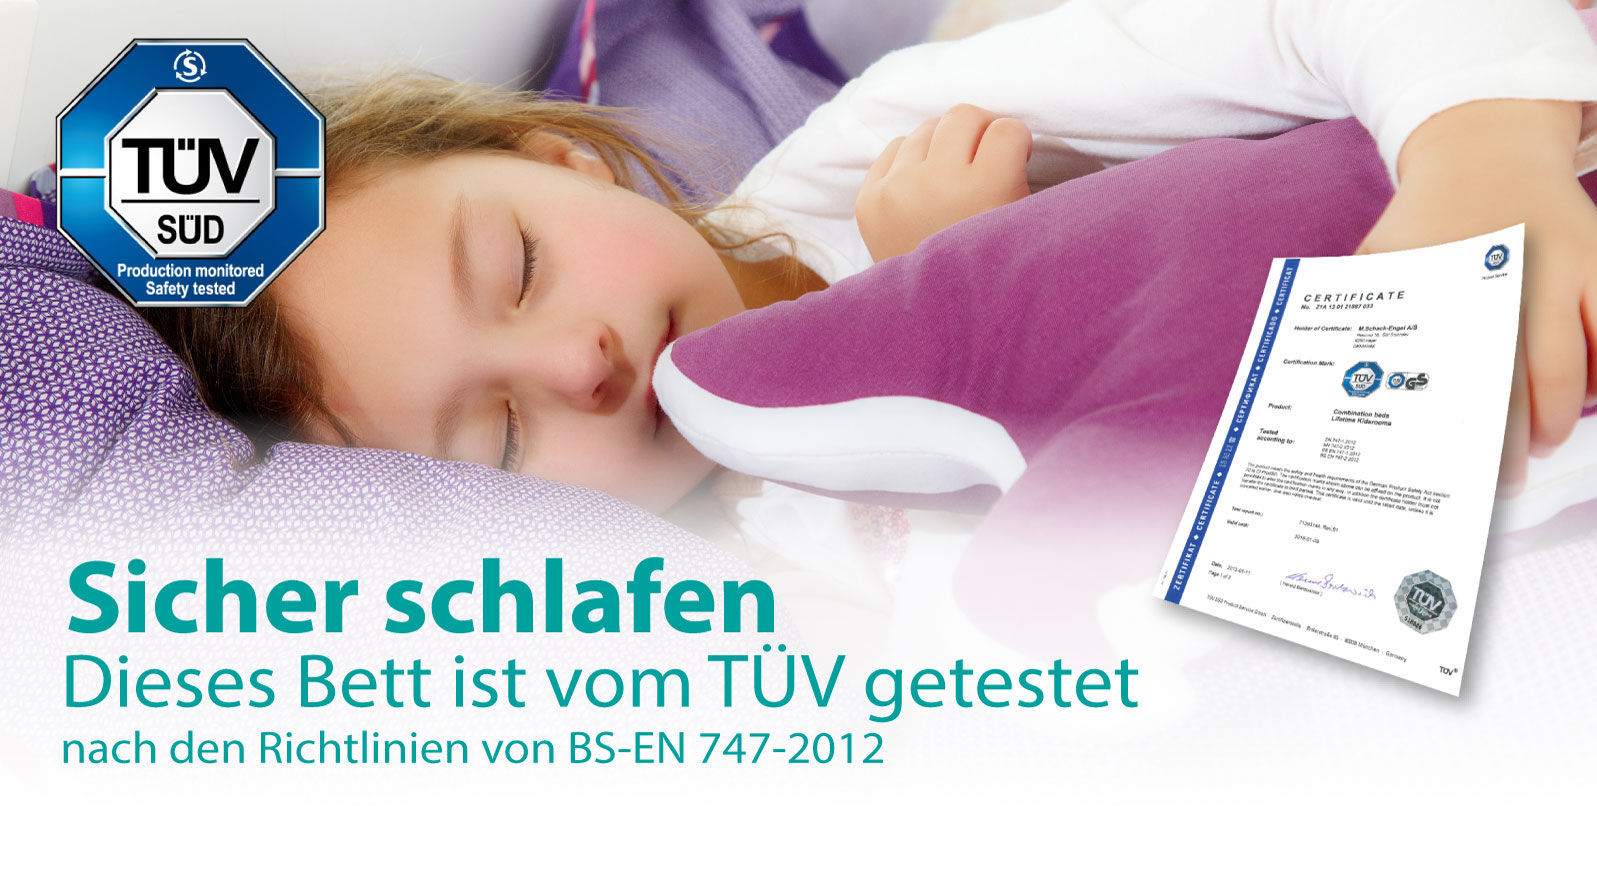 TÜV-Zertifikat LIFETIME für sicheres Schlafen